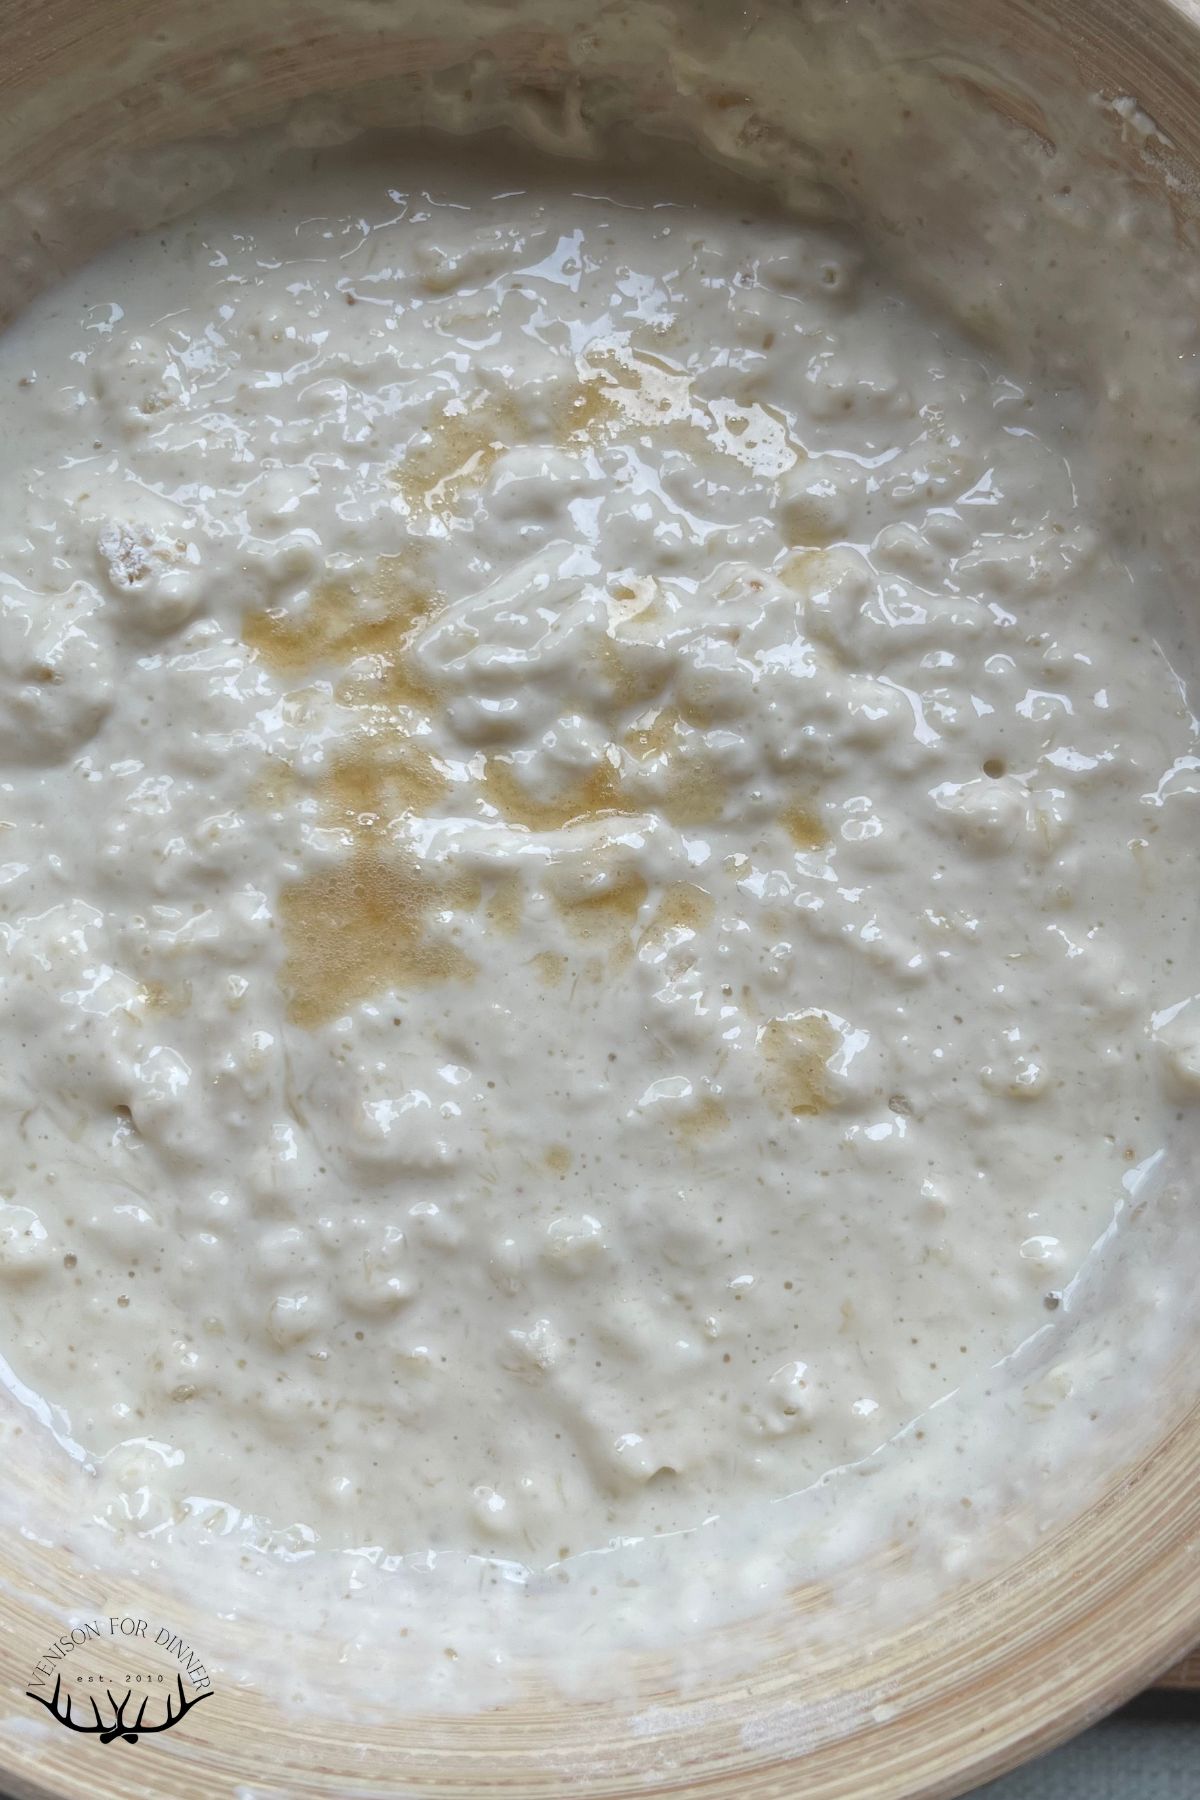 Lumpy pancake batter in a mixing bowl.